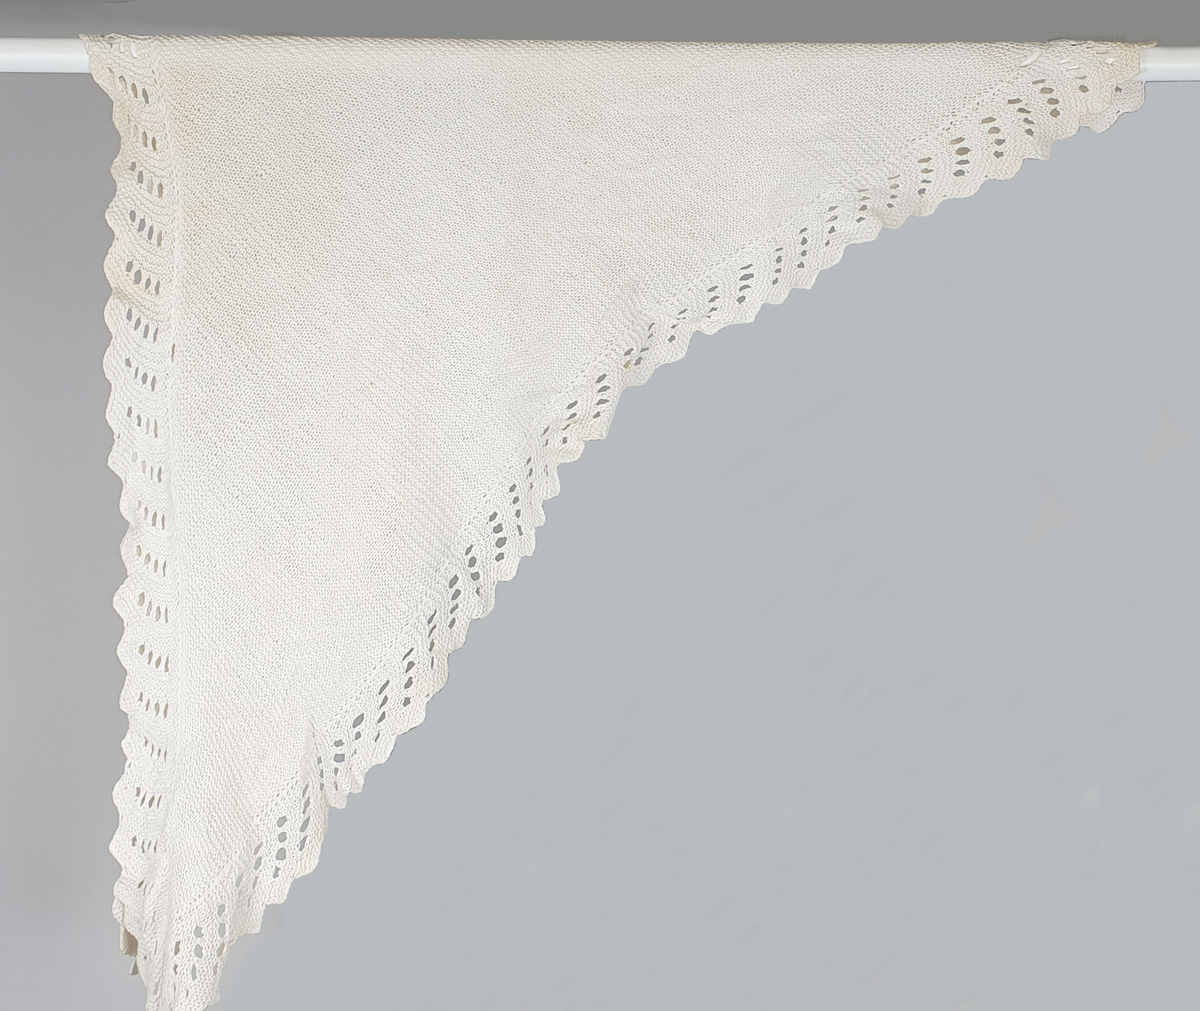 Hvitt, trekantet sjal (tørkle) av bomull, håndstrikket med hullbord langs ytterkantene.